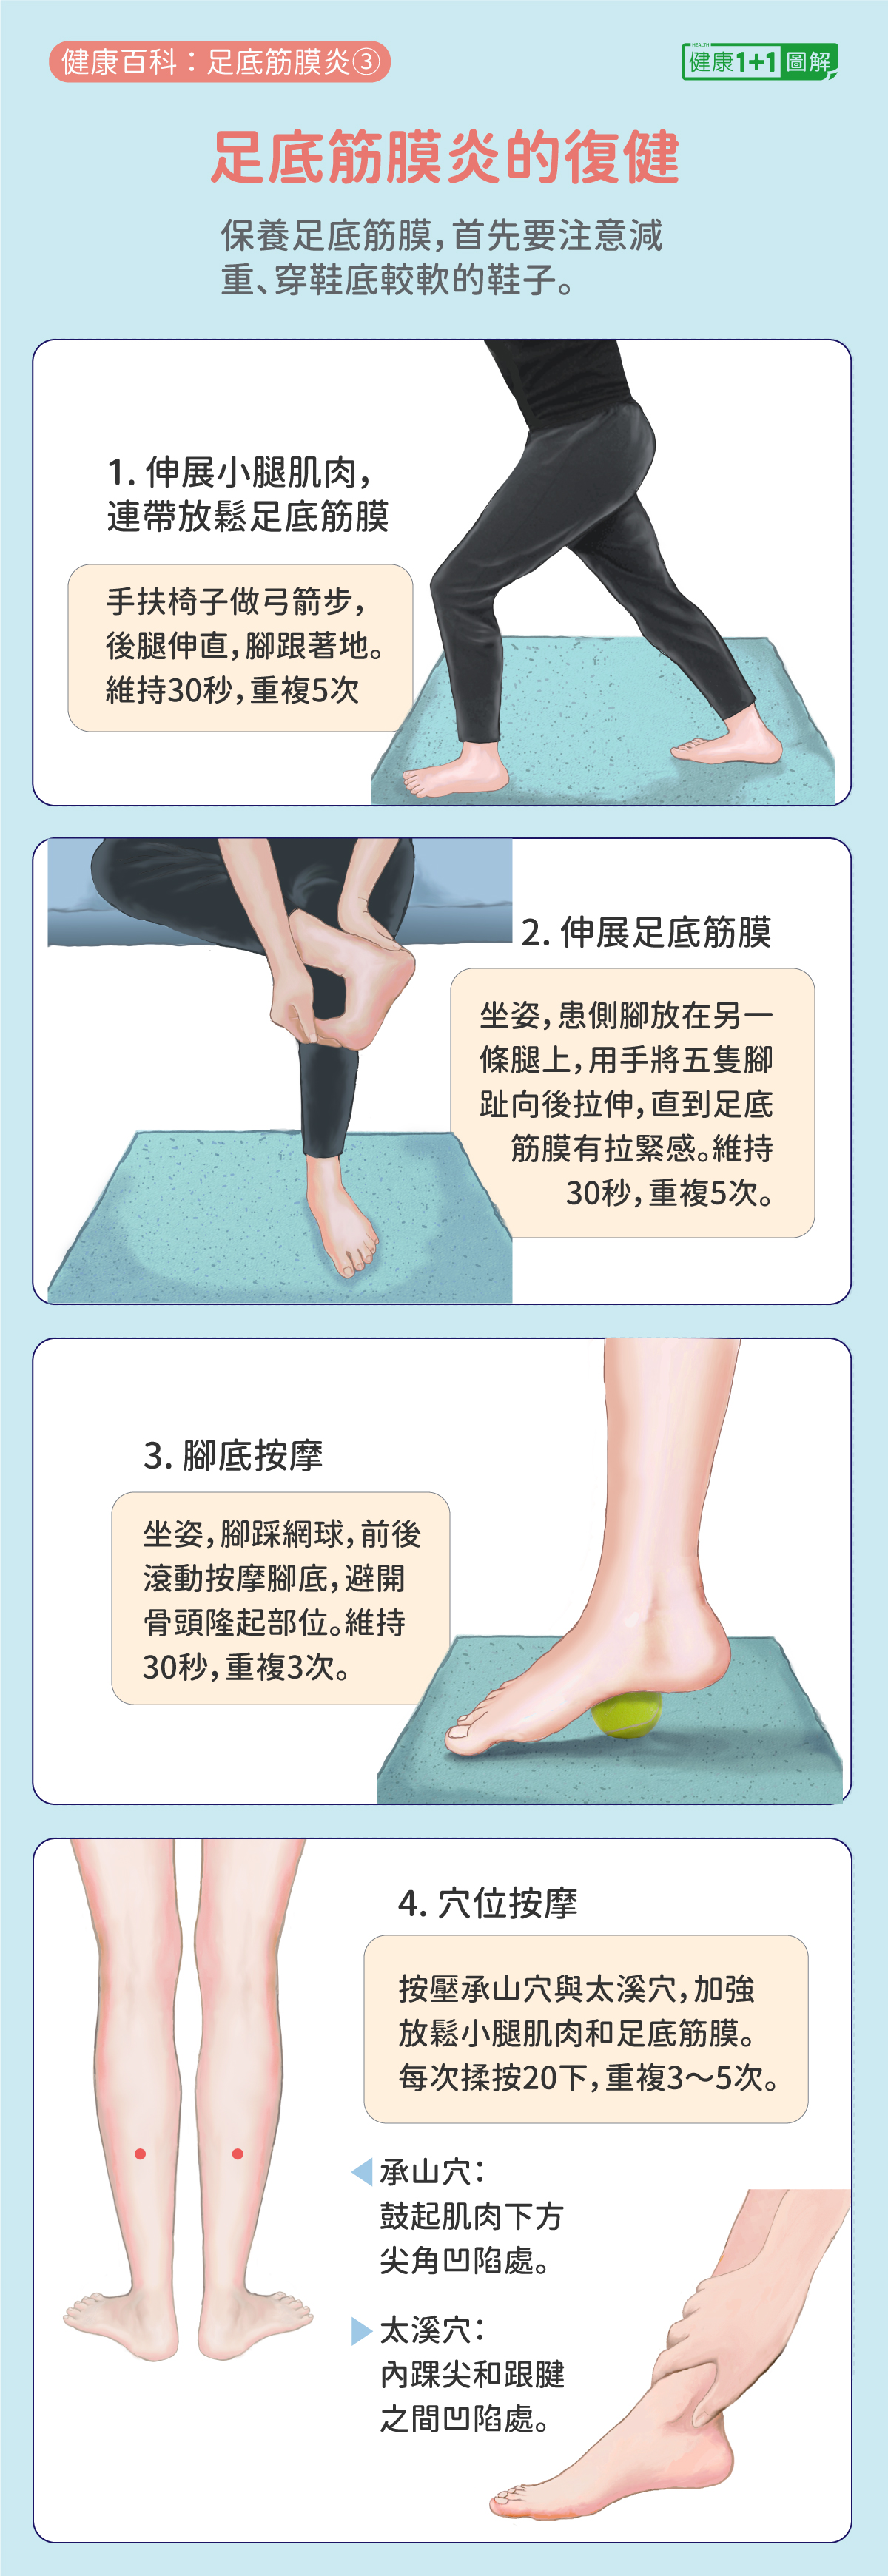 足底筋膜炎的症状有哪些？ - 知乎